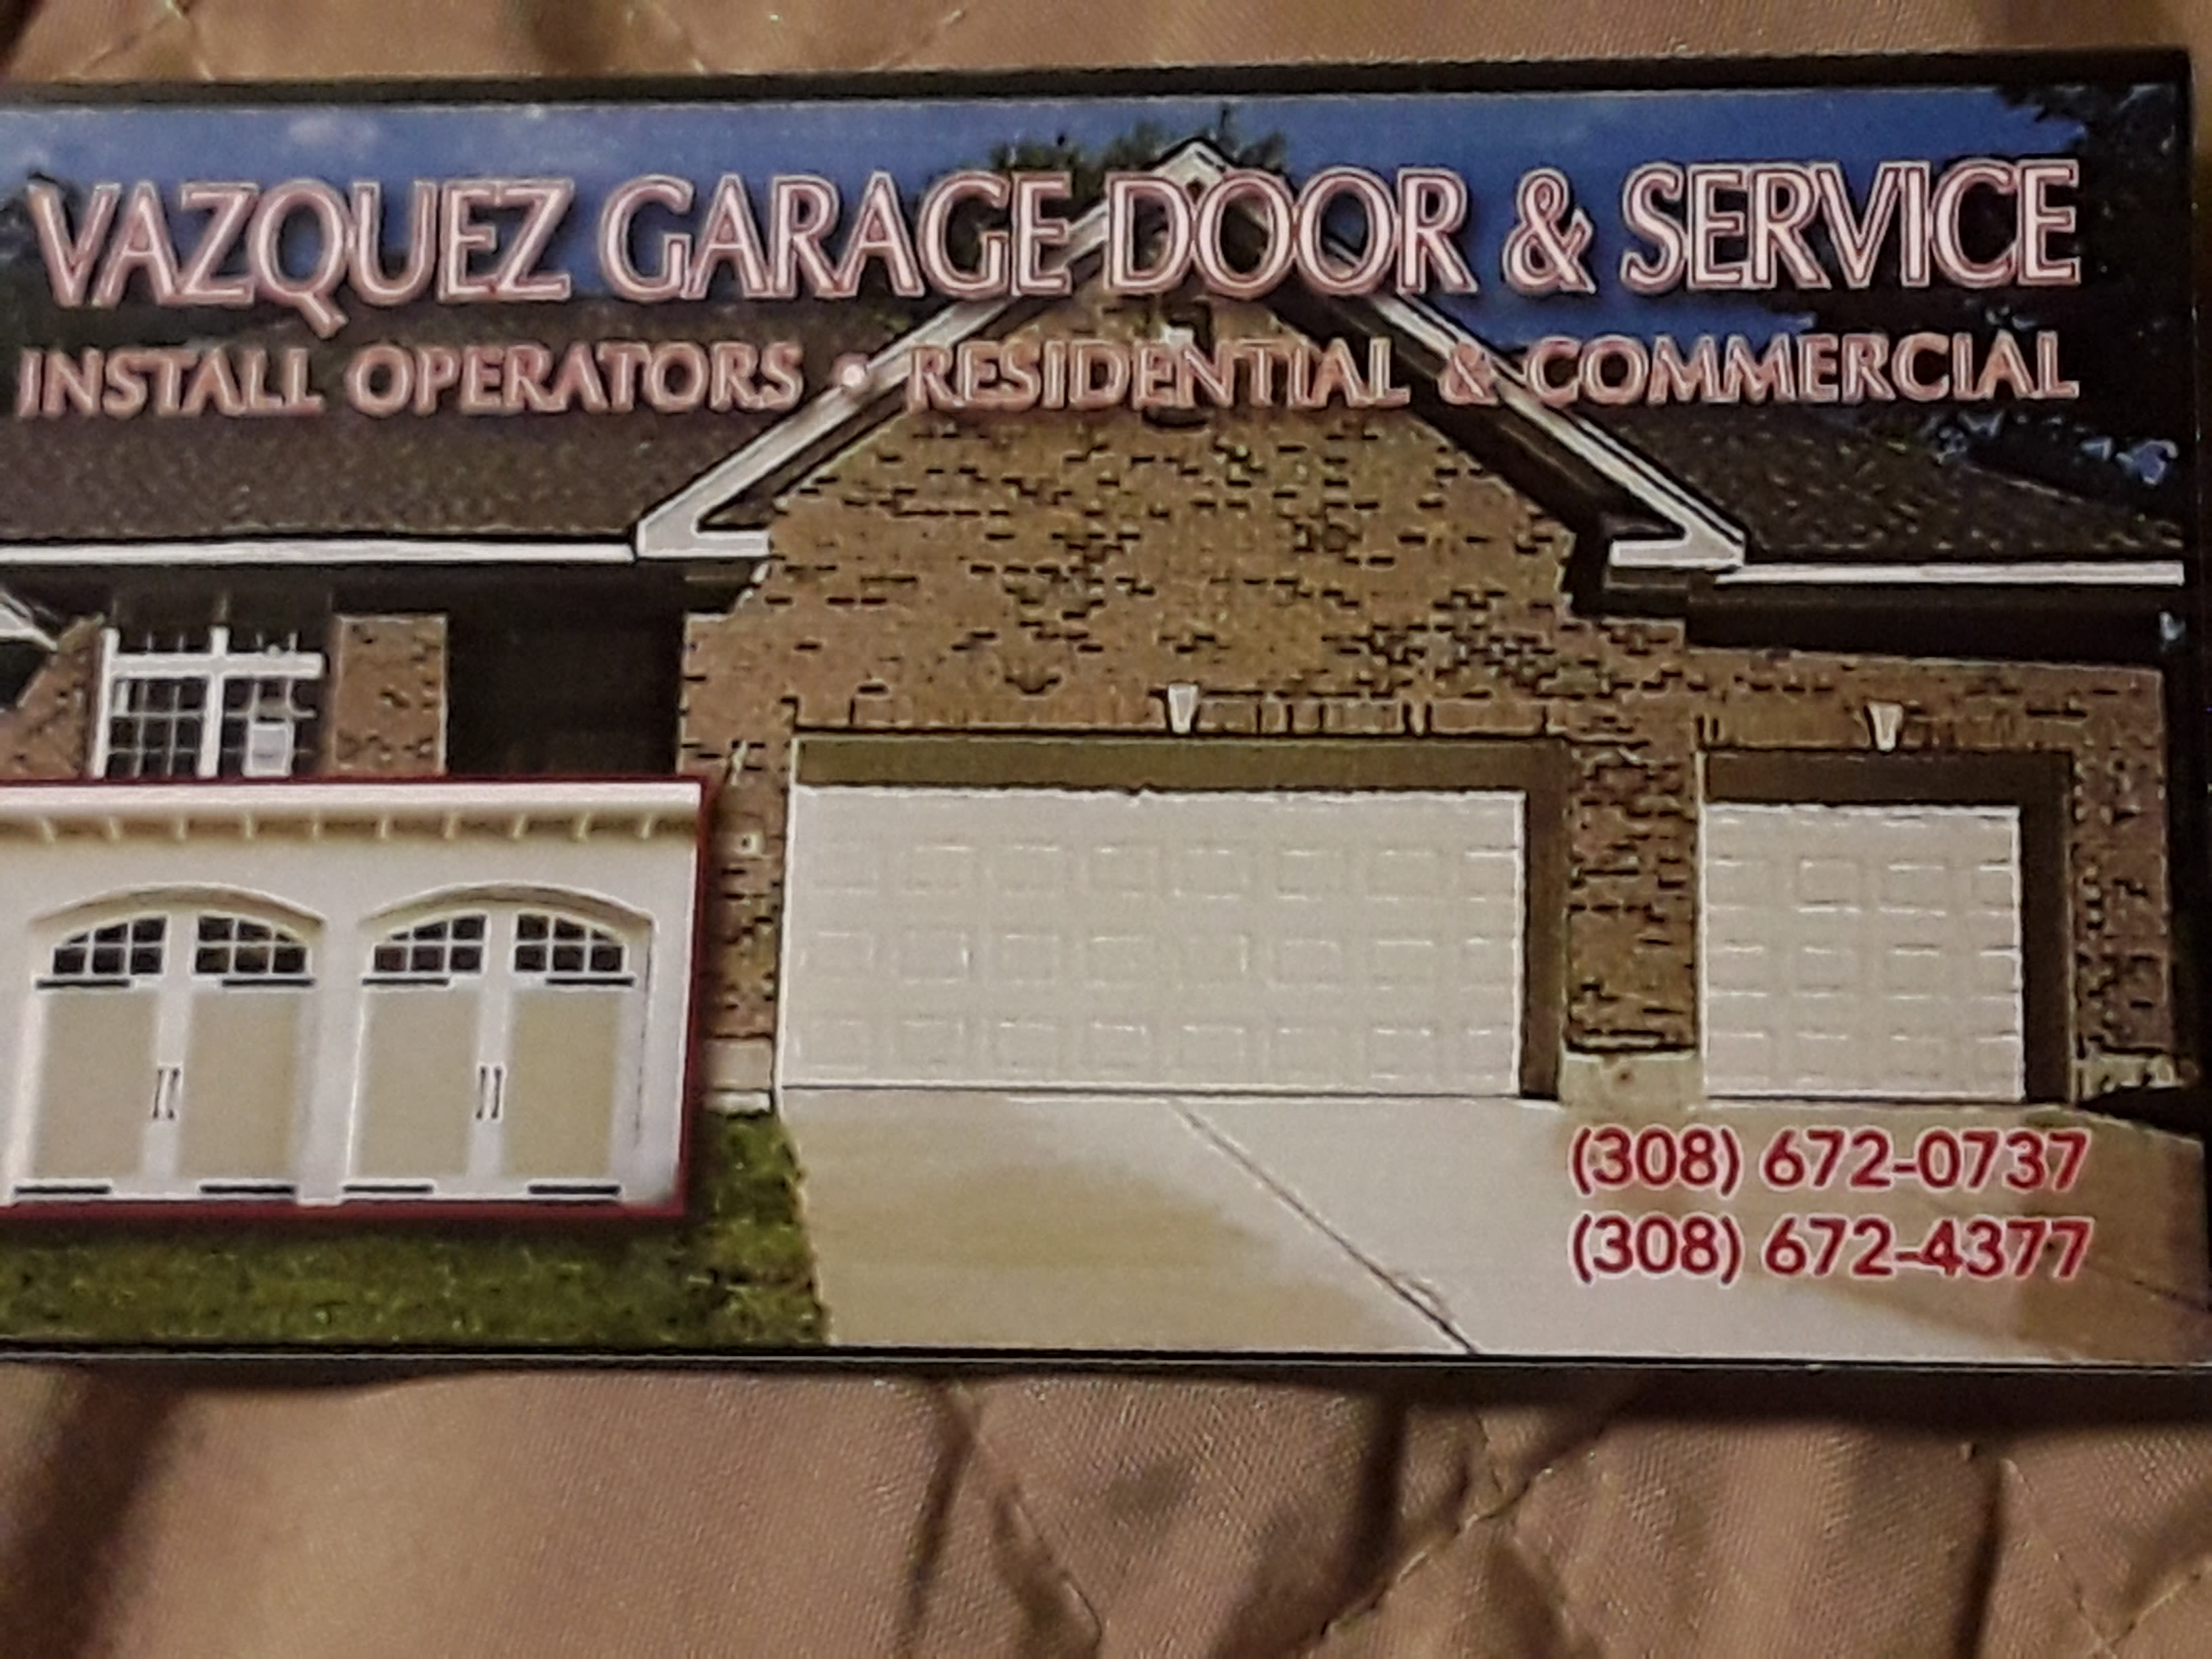 Vazquez Garage Doors